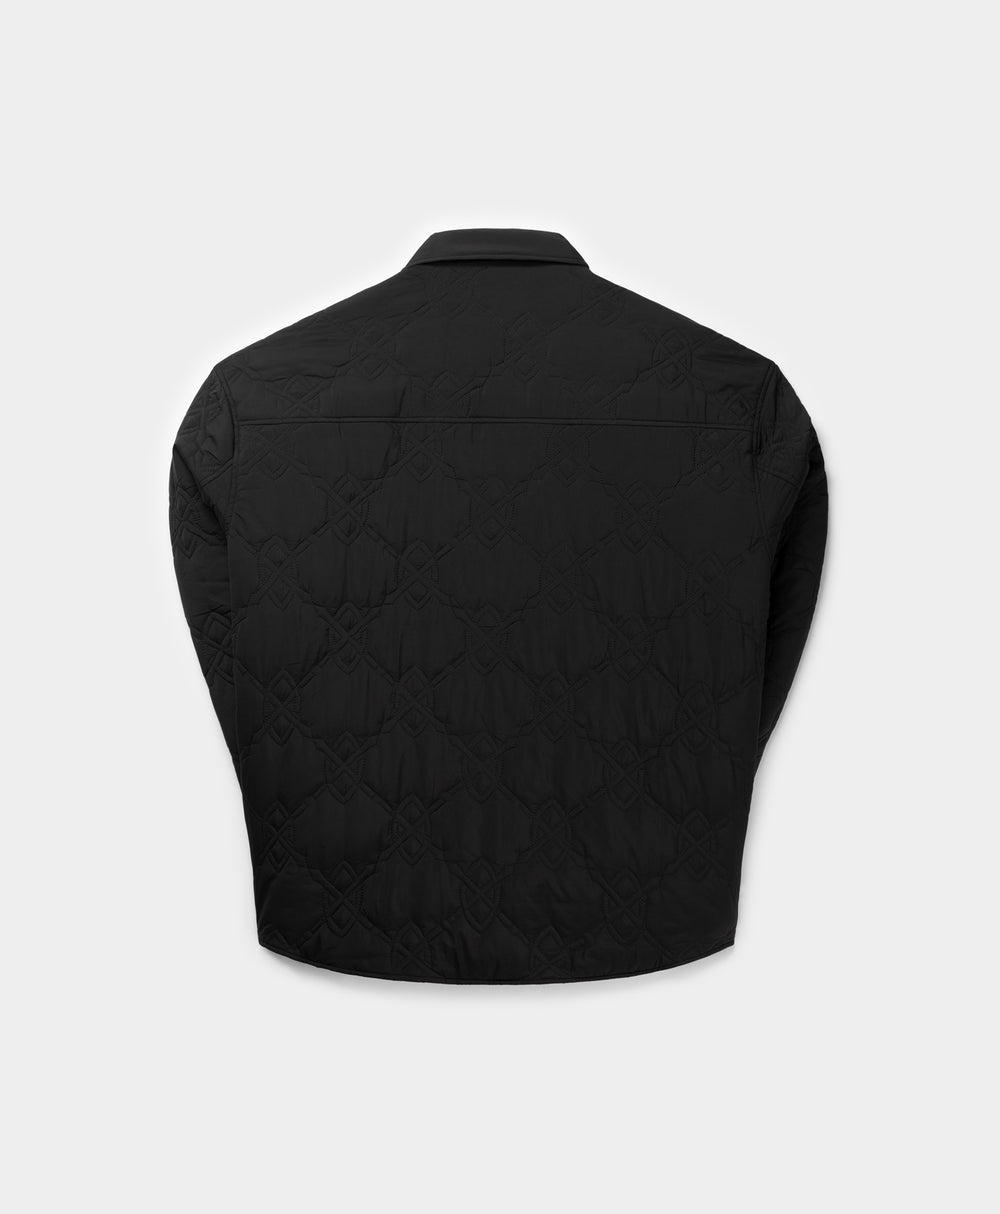 DP - Black Rajub LS Shirt - Packshot - Rear